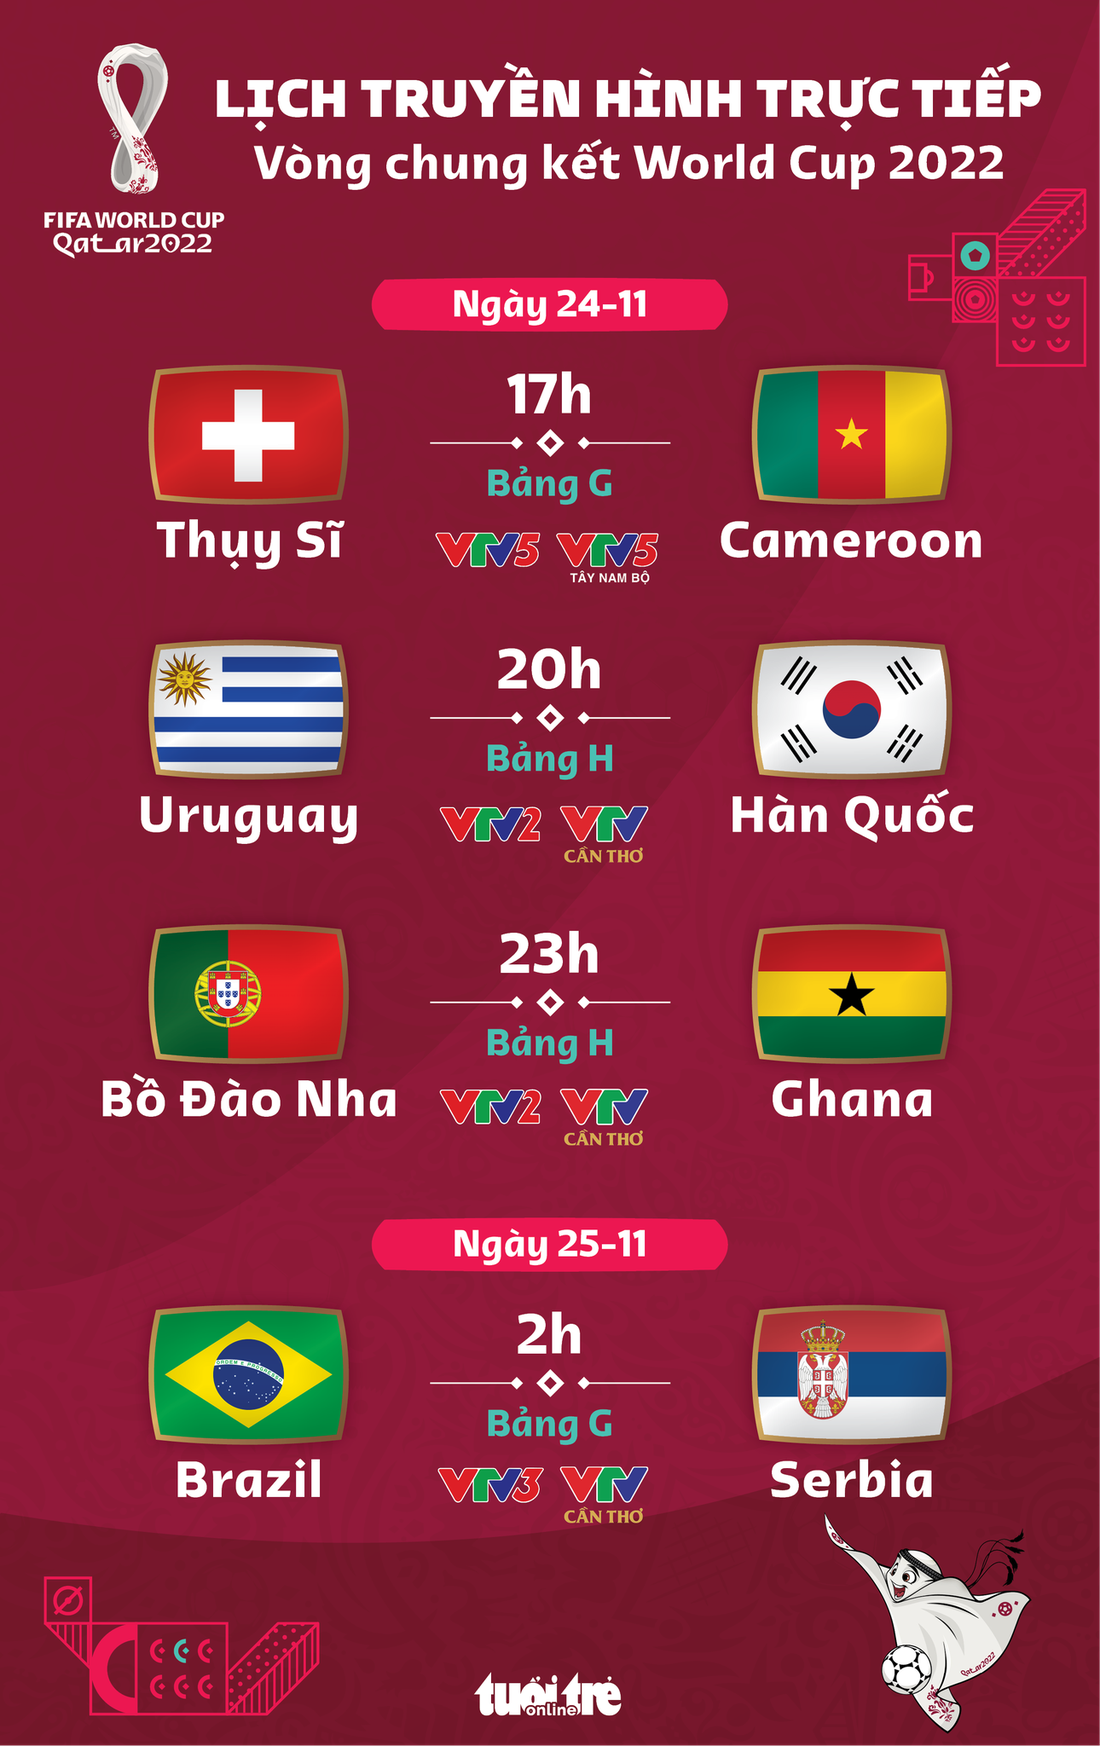 Lịch trực tiếp World Cup 2022 ngày 24-11: Bồ Đào Nha gặp Ghana, Brazil đụng độ Serbia - Ảnh 1.